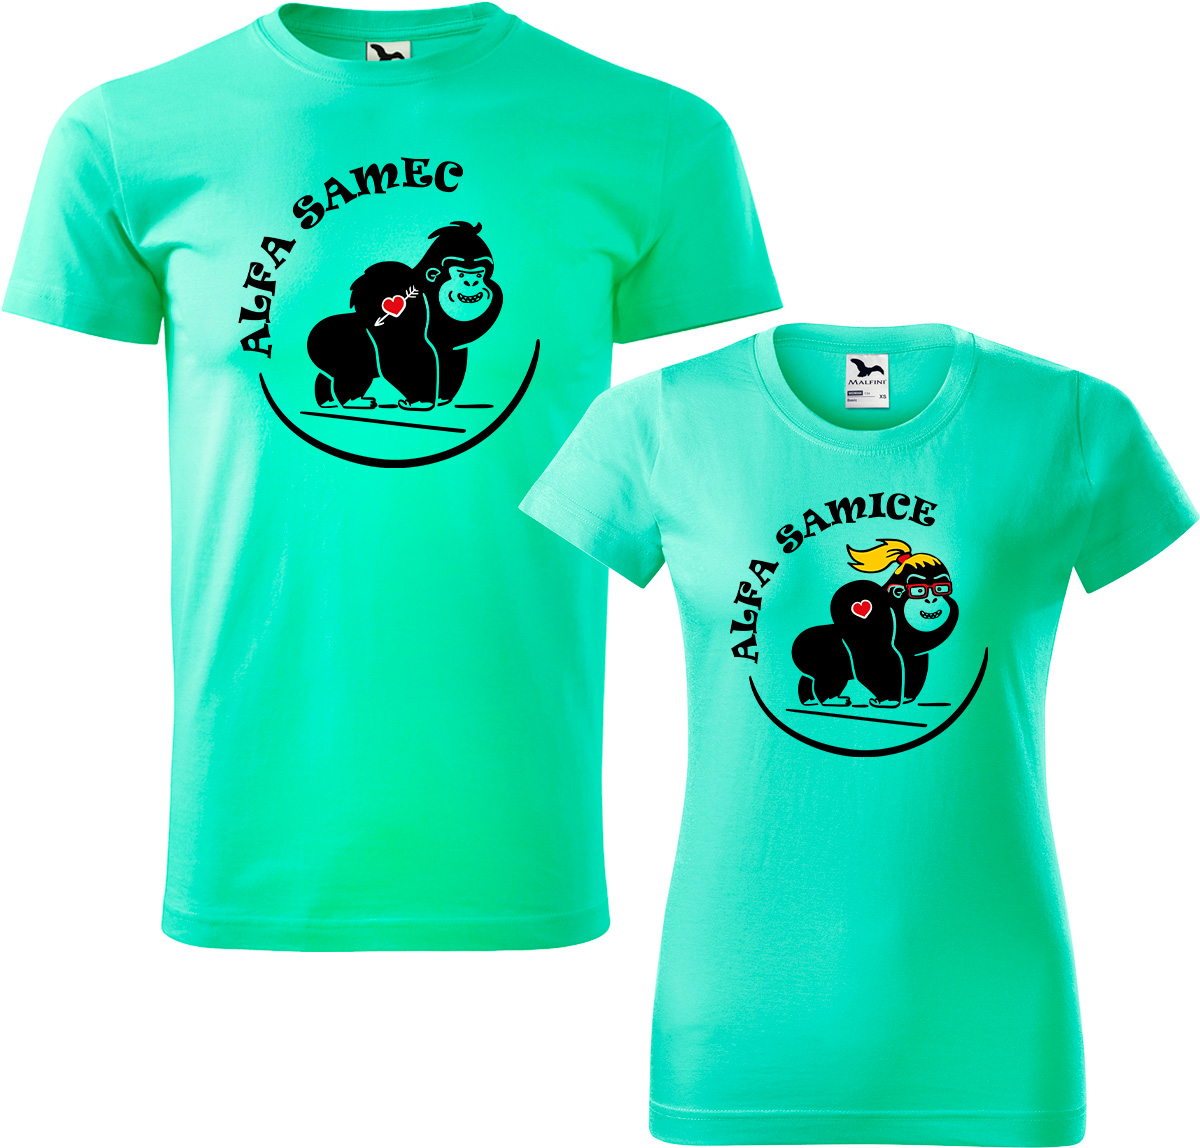 Trička pro páry - Alfa samec a alfa samice Barva: Mátová (95), Velikost dámské tričko: L, Velikost pánské tričko: L